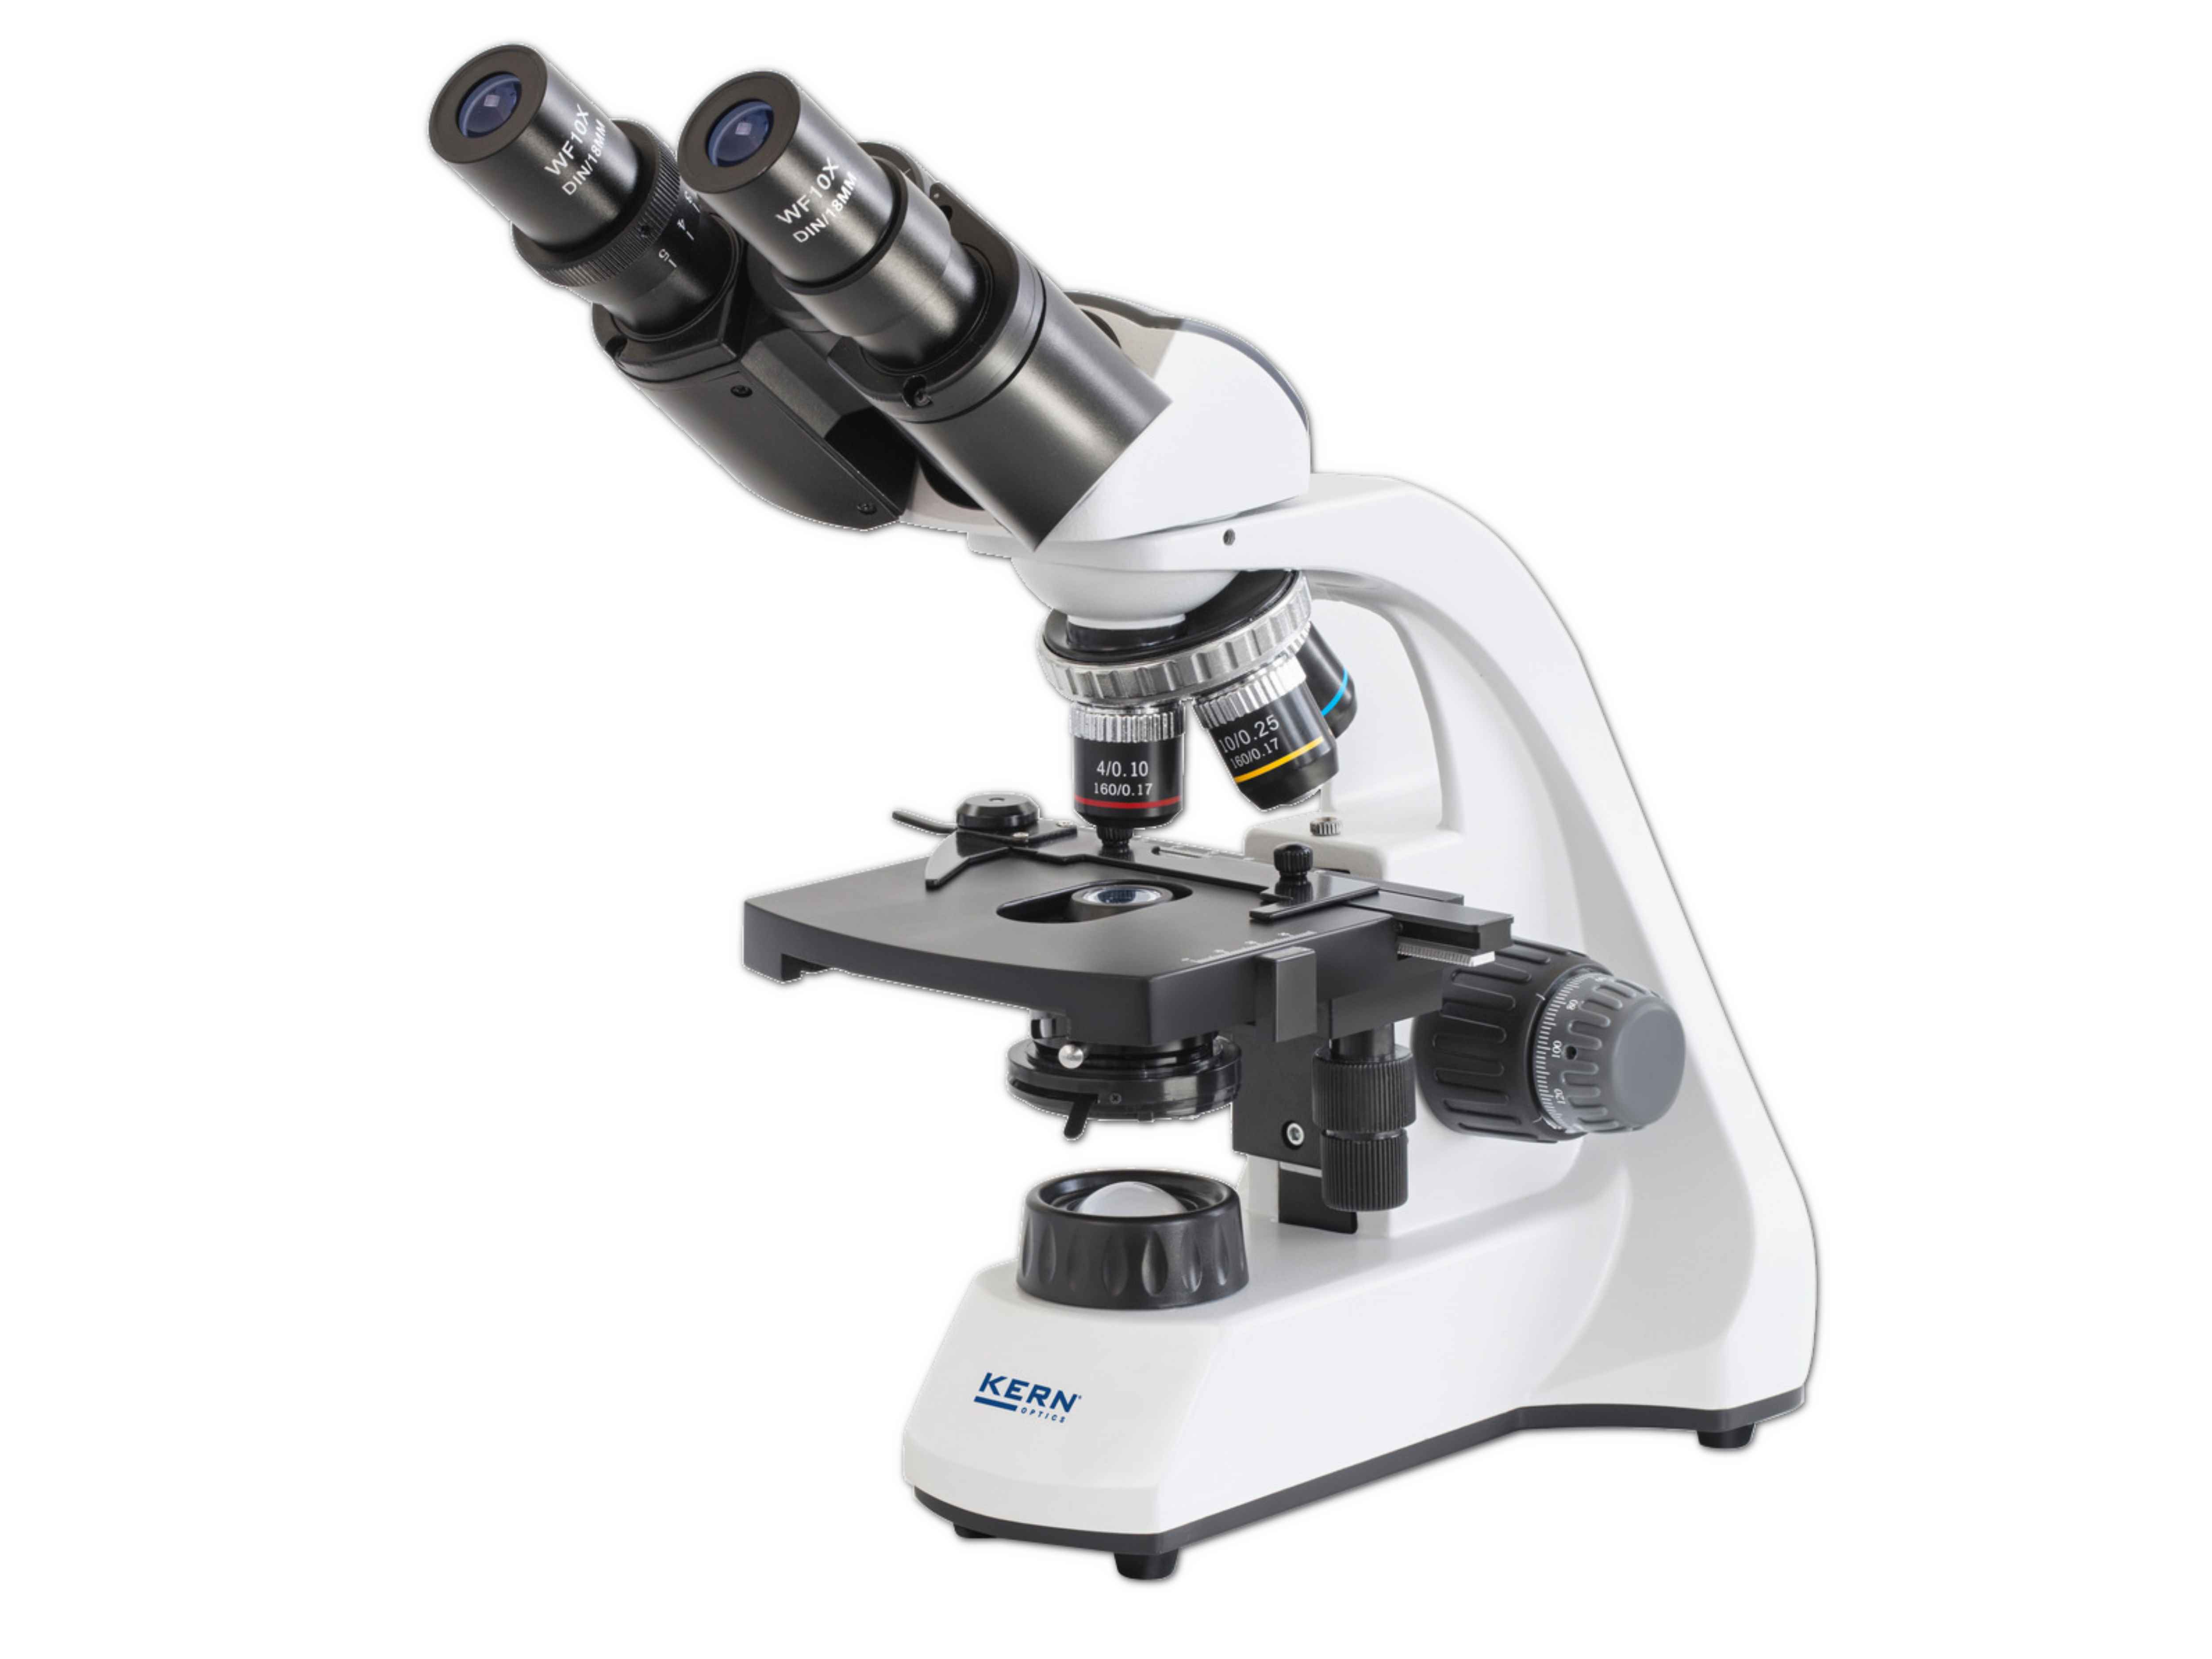    Mikroskop Kern - OBT 106